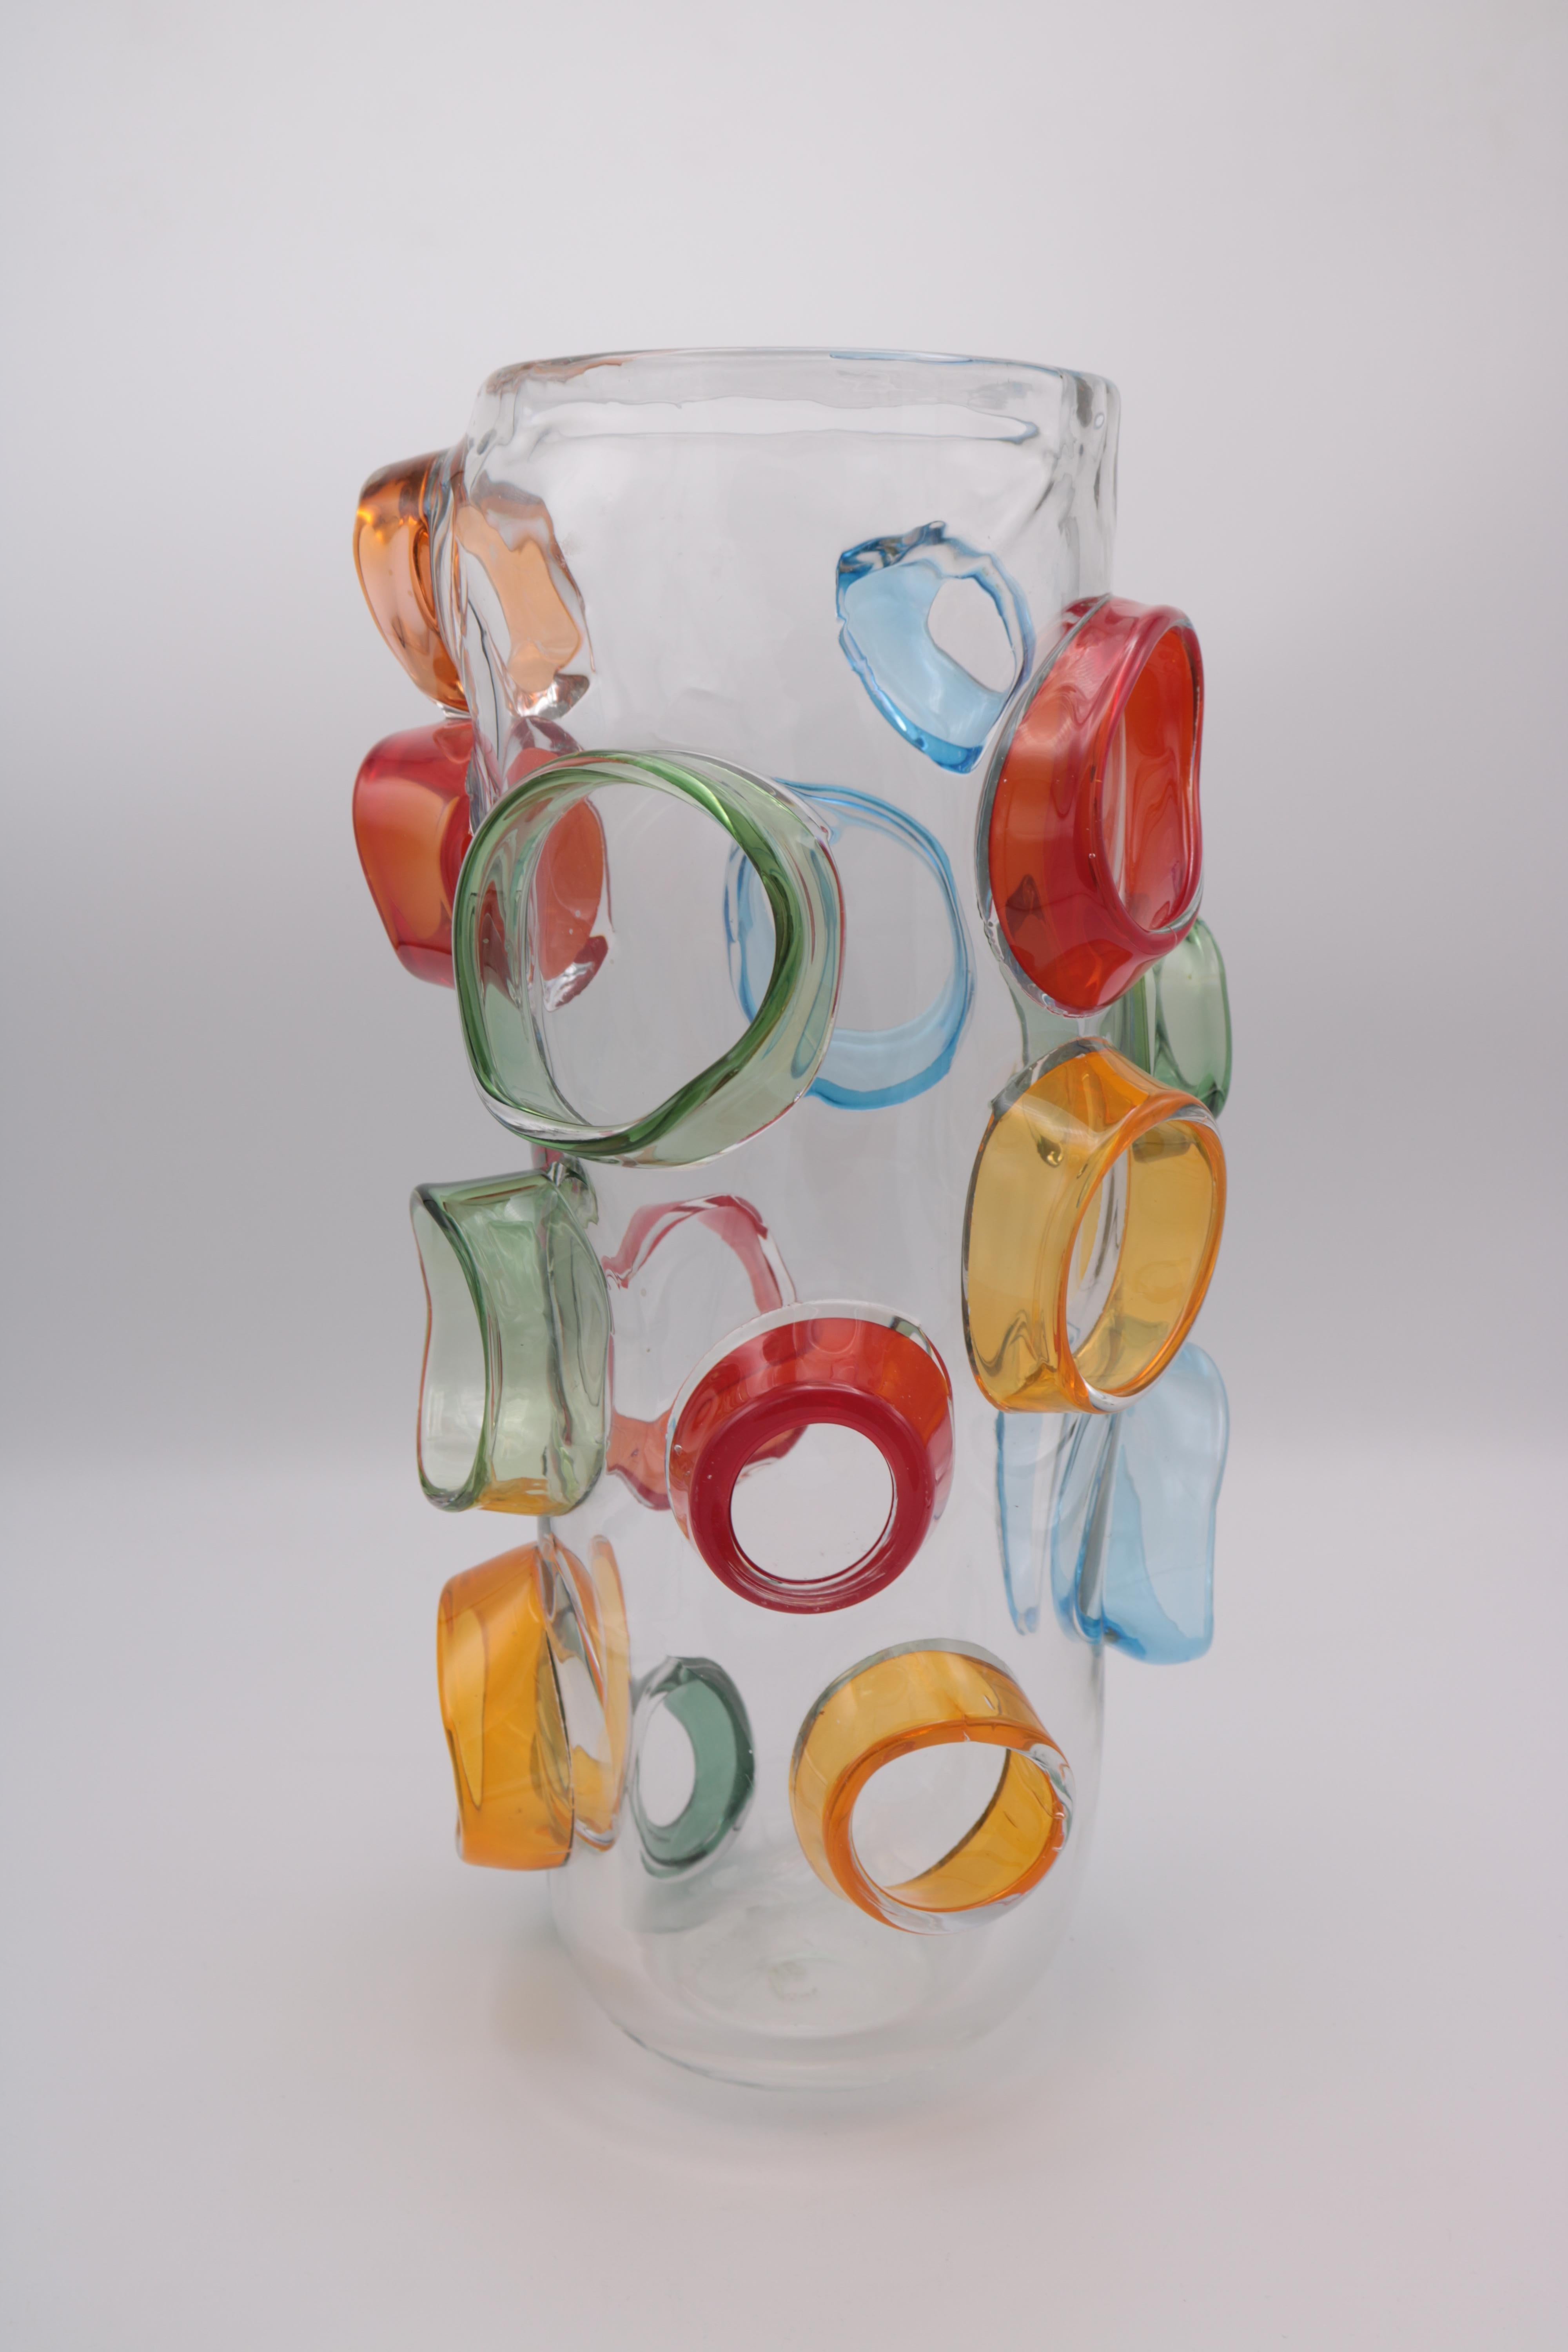 Vase aus Kunstglas von Martin Postch in limitierter Auflage. 
Klares Glas mit aufgesetzten mehrfarbigen Prunkstücken. 
Geätzte Signatur auf der Unterseite.